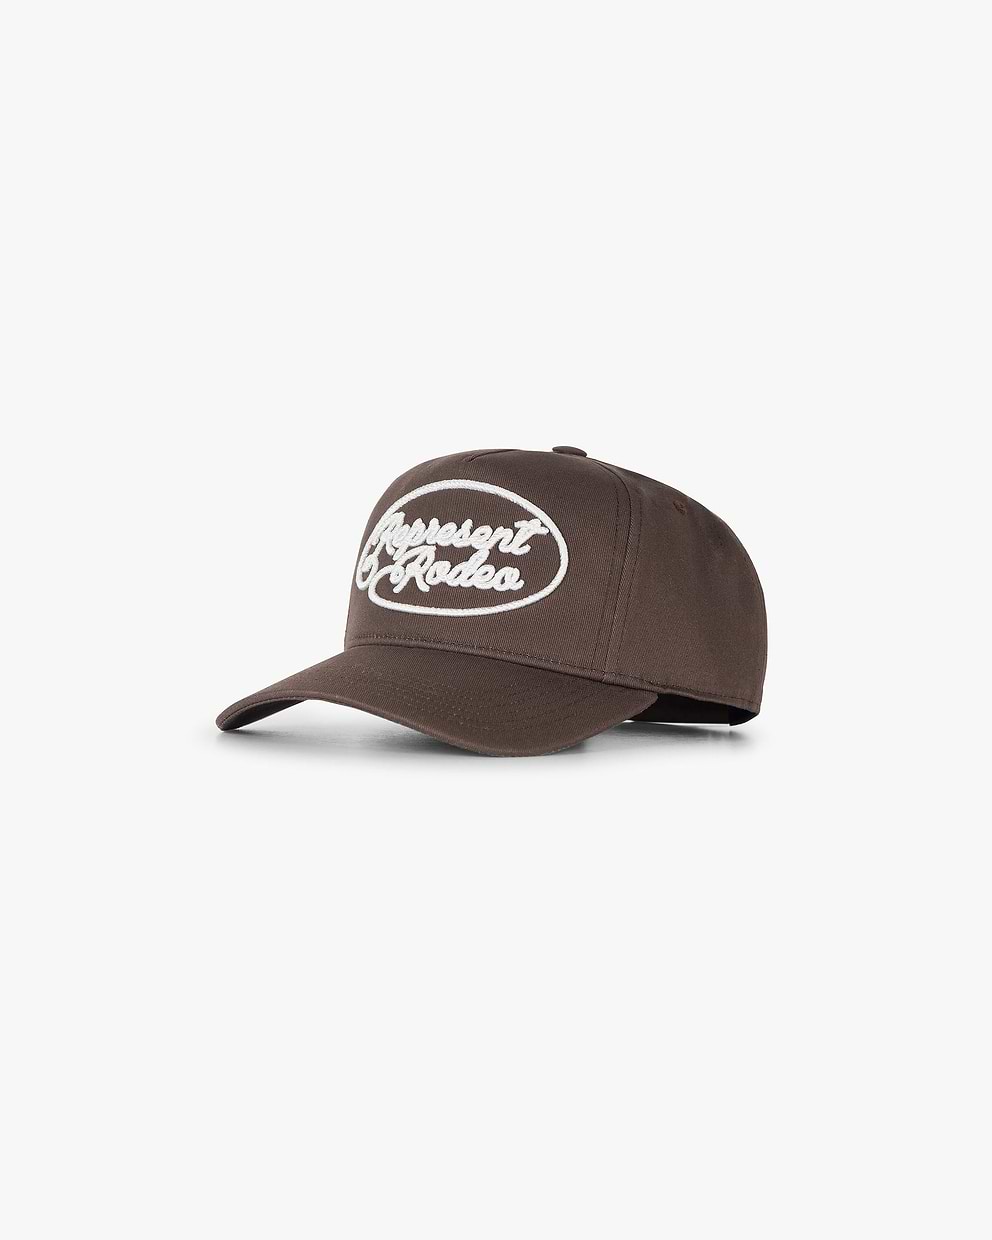 Represent Rodeo Cap - Vintage Brown